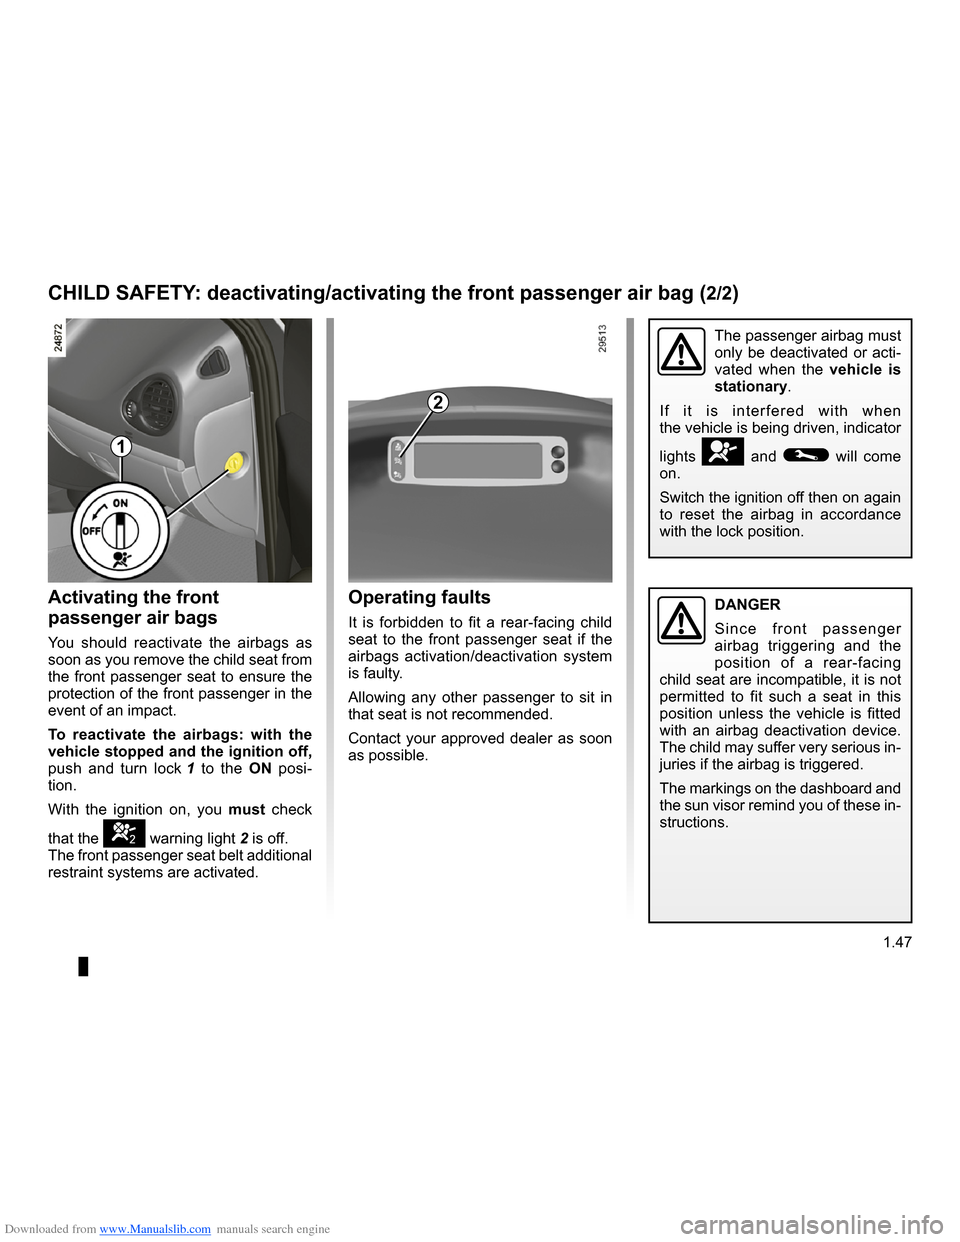 RENAULT CLIO 2009 X85 / 3.G Owners Manual Downloaded from www.Manualslib.com manuals search engine 
air bagactivating the front passenger air bags ............(current page)
JauneNoirNoir texte
1.47
ENG_UD10530_1Sécurité enfants : désactiv